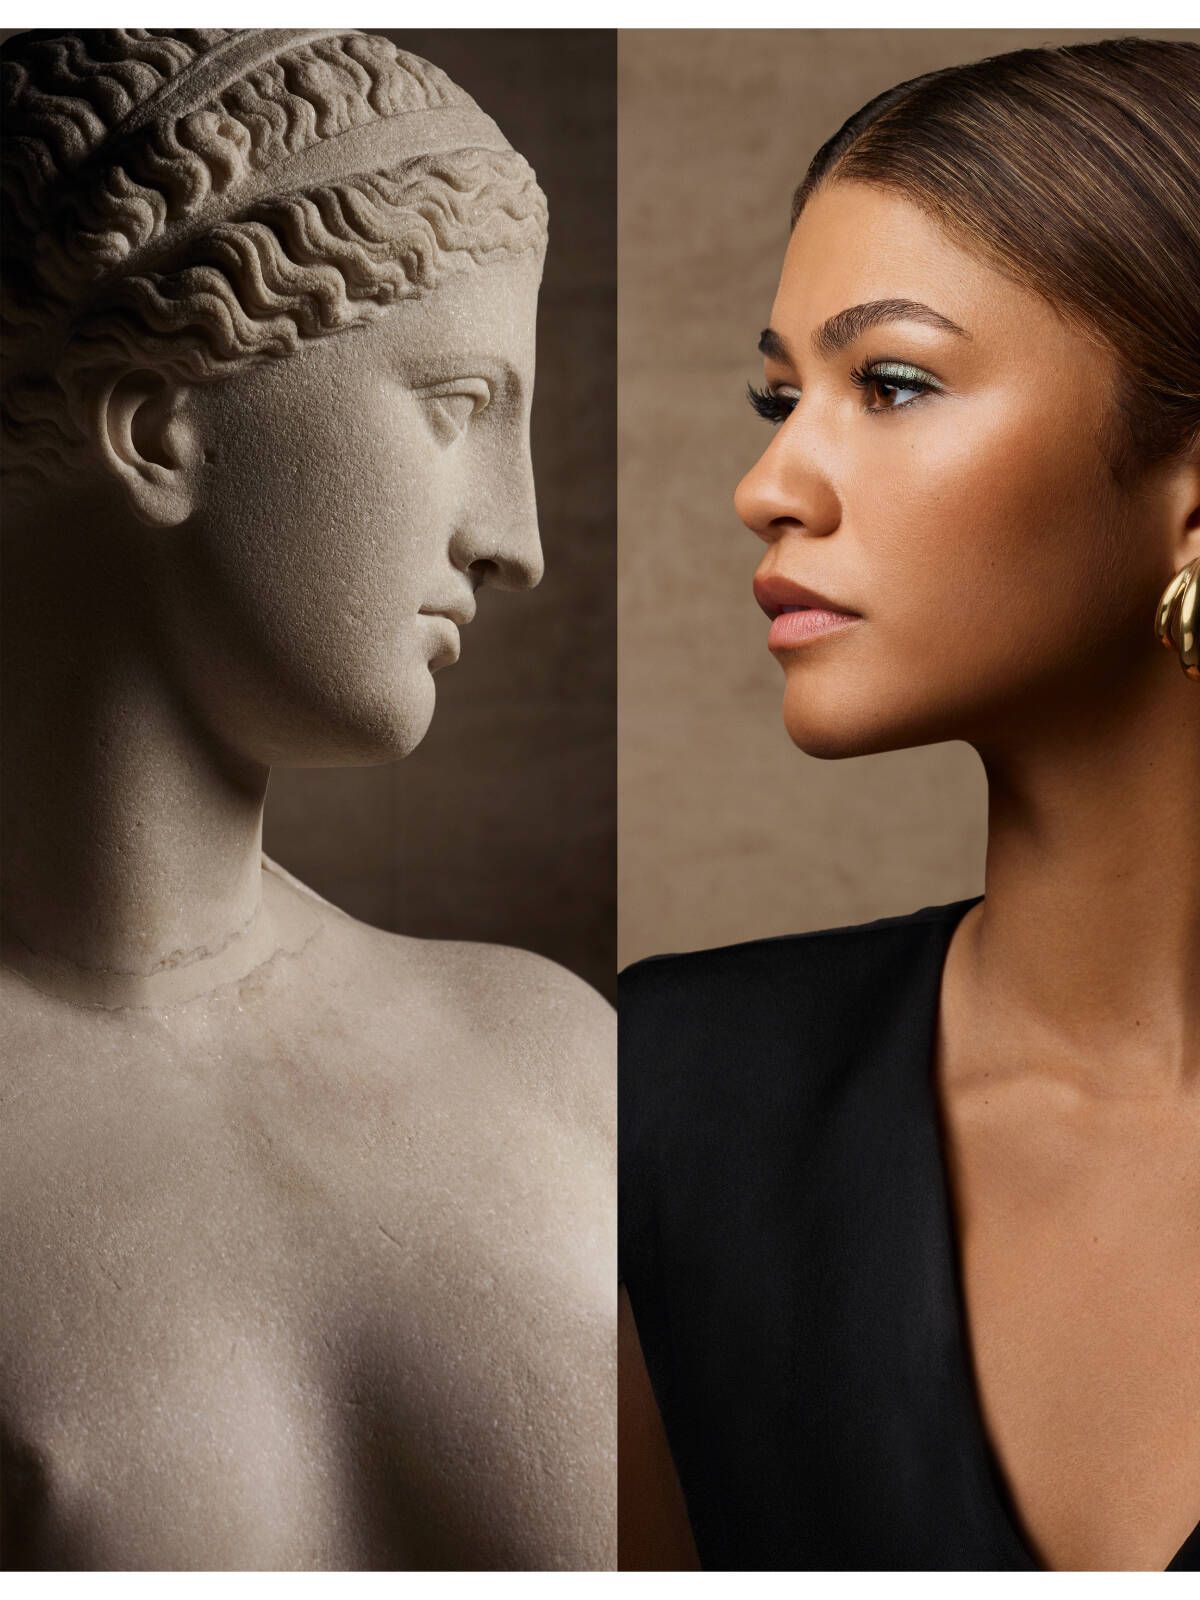 La Venus de Arlés frente al rostro de Zendaya. (Cortesía de Lancôme)